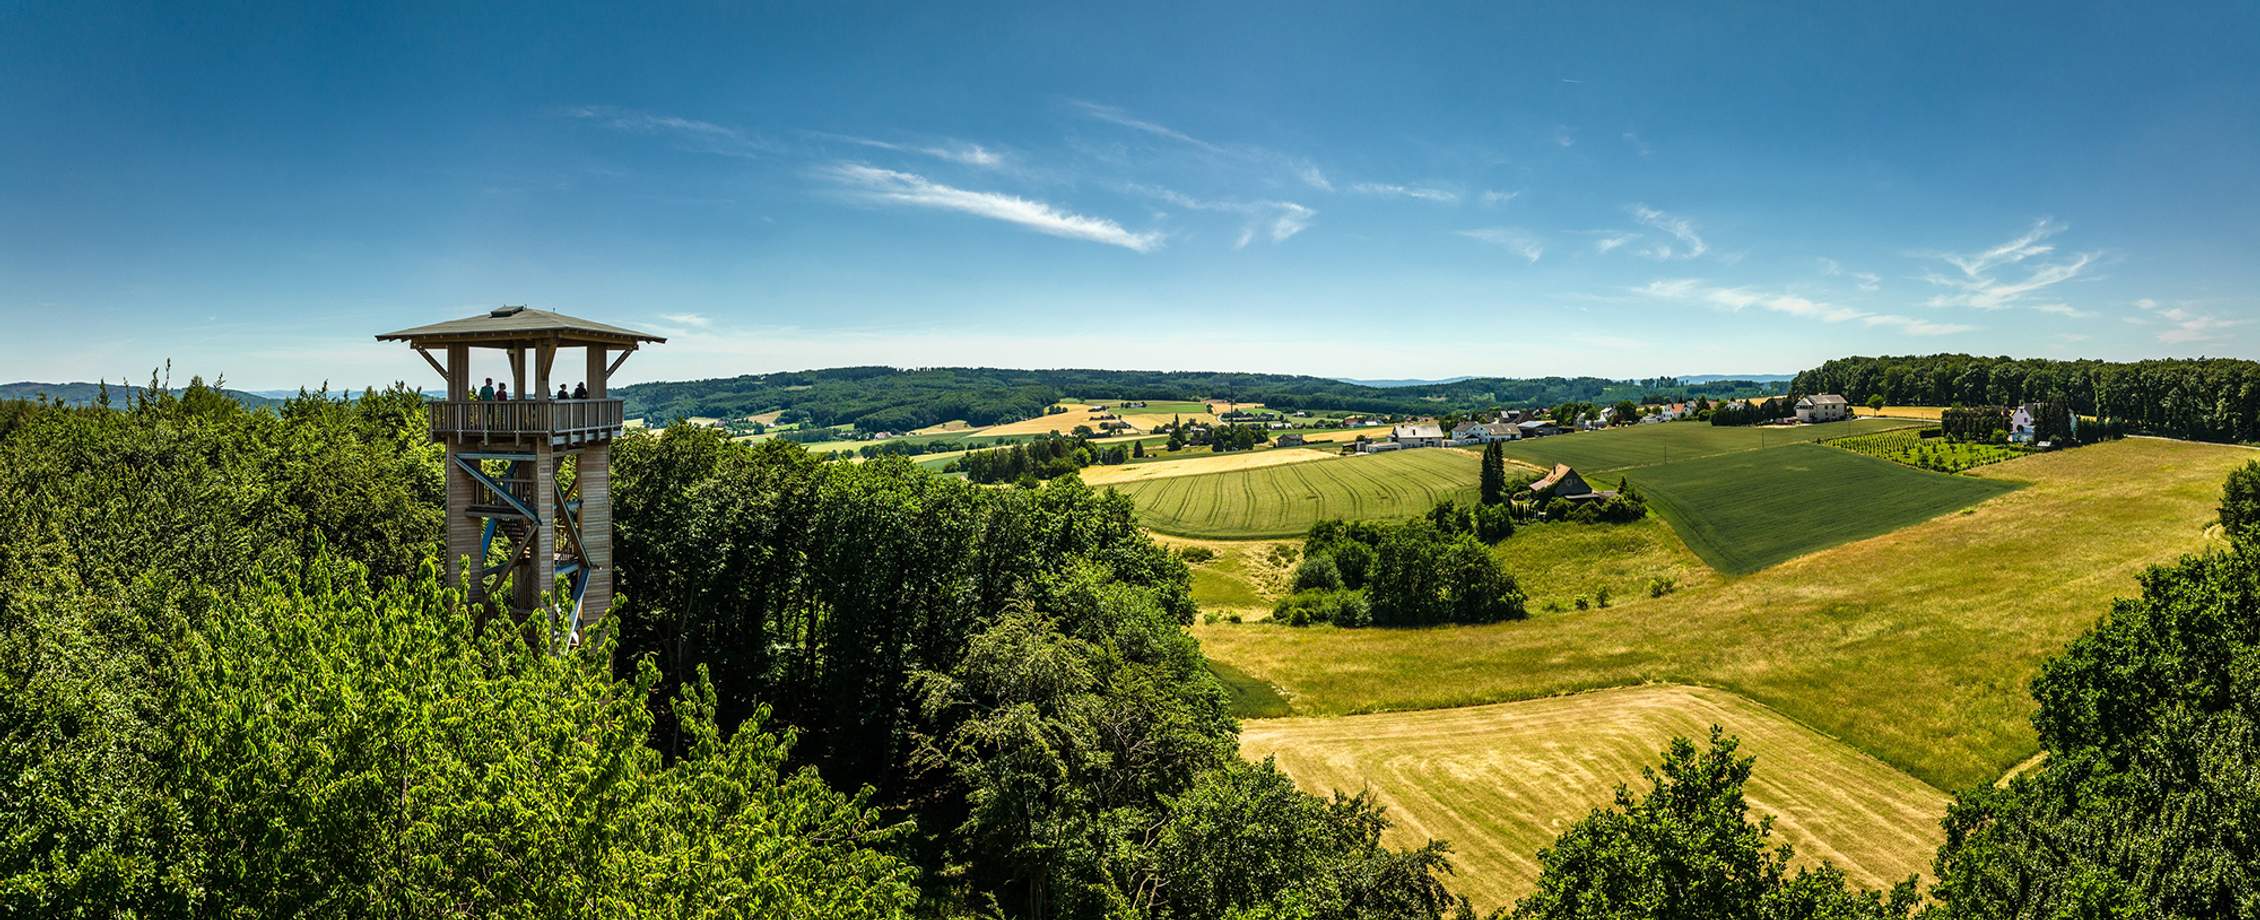 Preußisch Oldendorf: Gesundheit, Urlaub & Natur